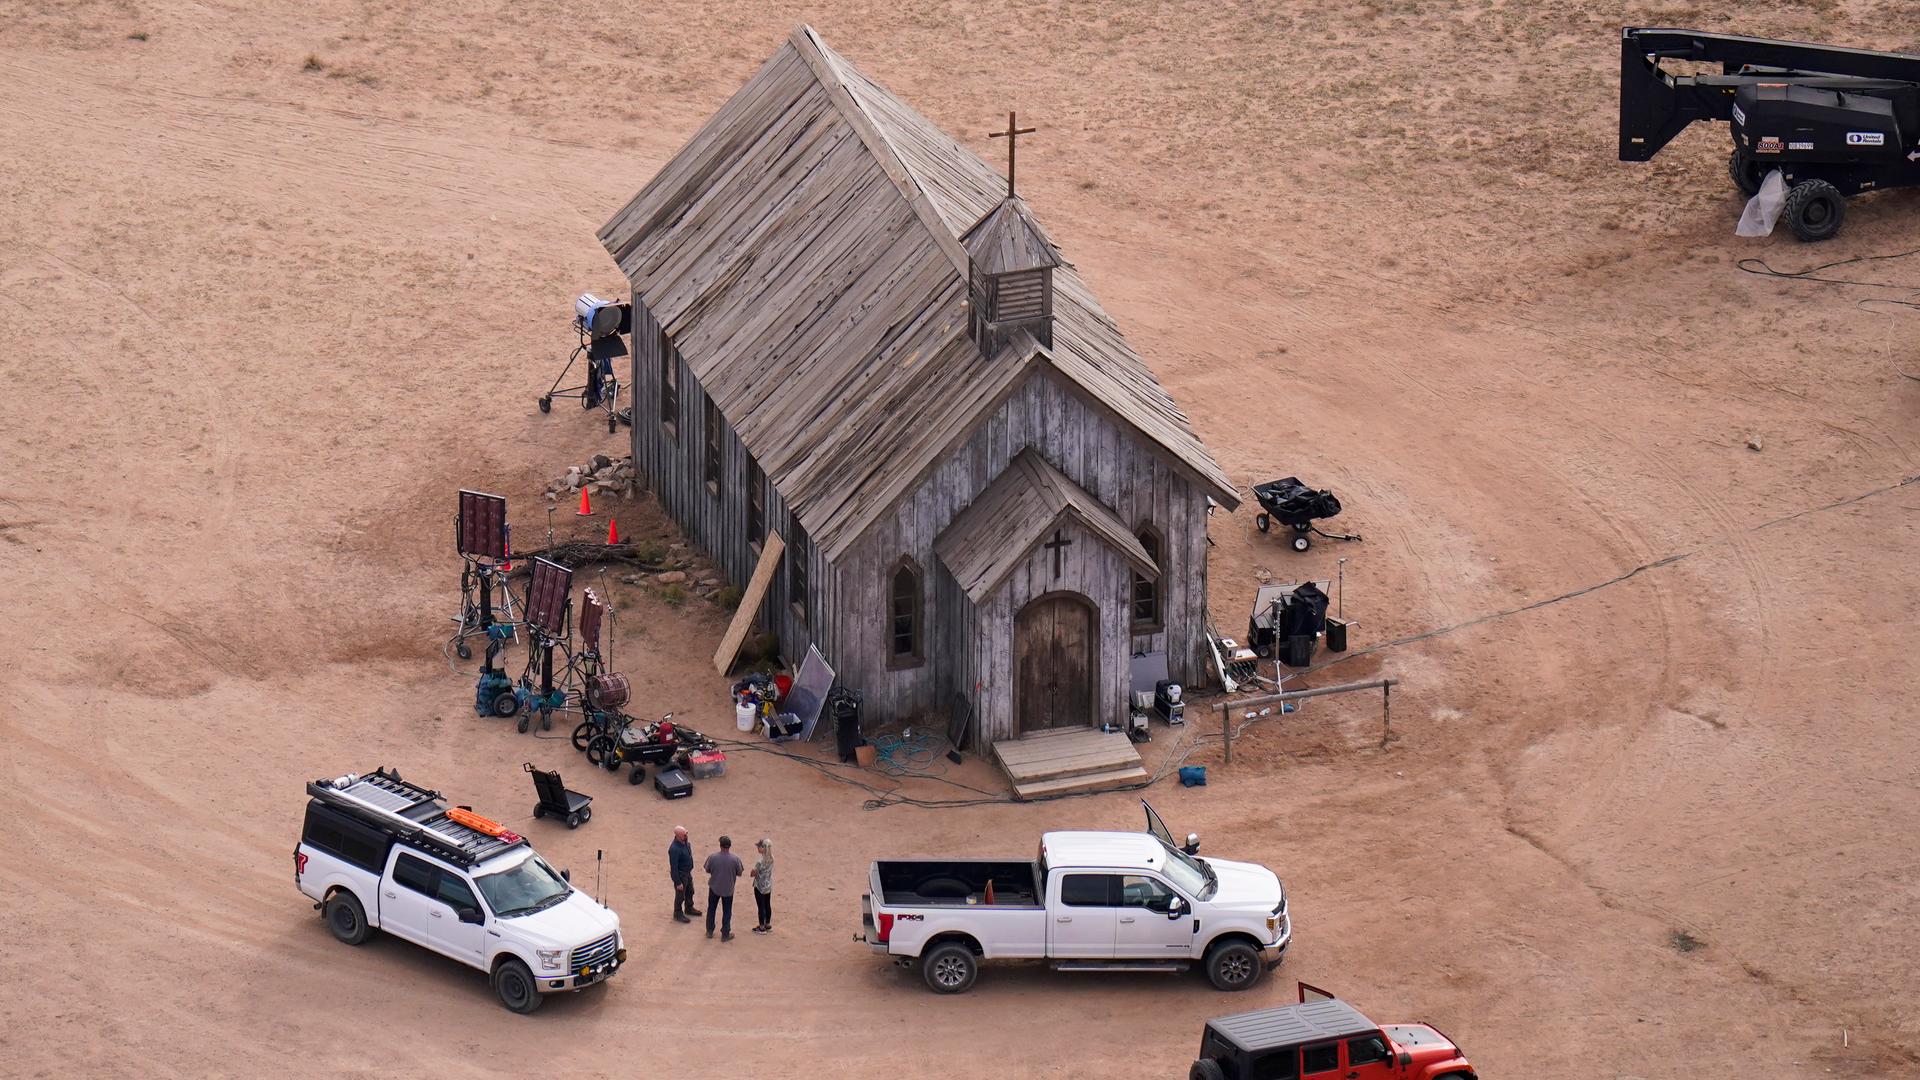 Zu sehen ist eine Luftaufnahme der Bonanza Creek Ranch, man sieht eine simple Kirche aus Holz mit einem Kreuz obendrauf, drumherum sind Filmequipment und mehrere Autos zu sehen.